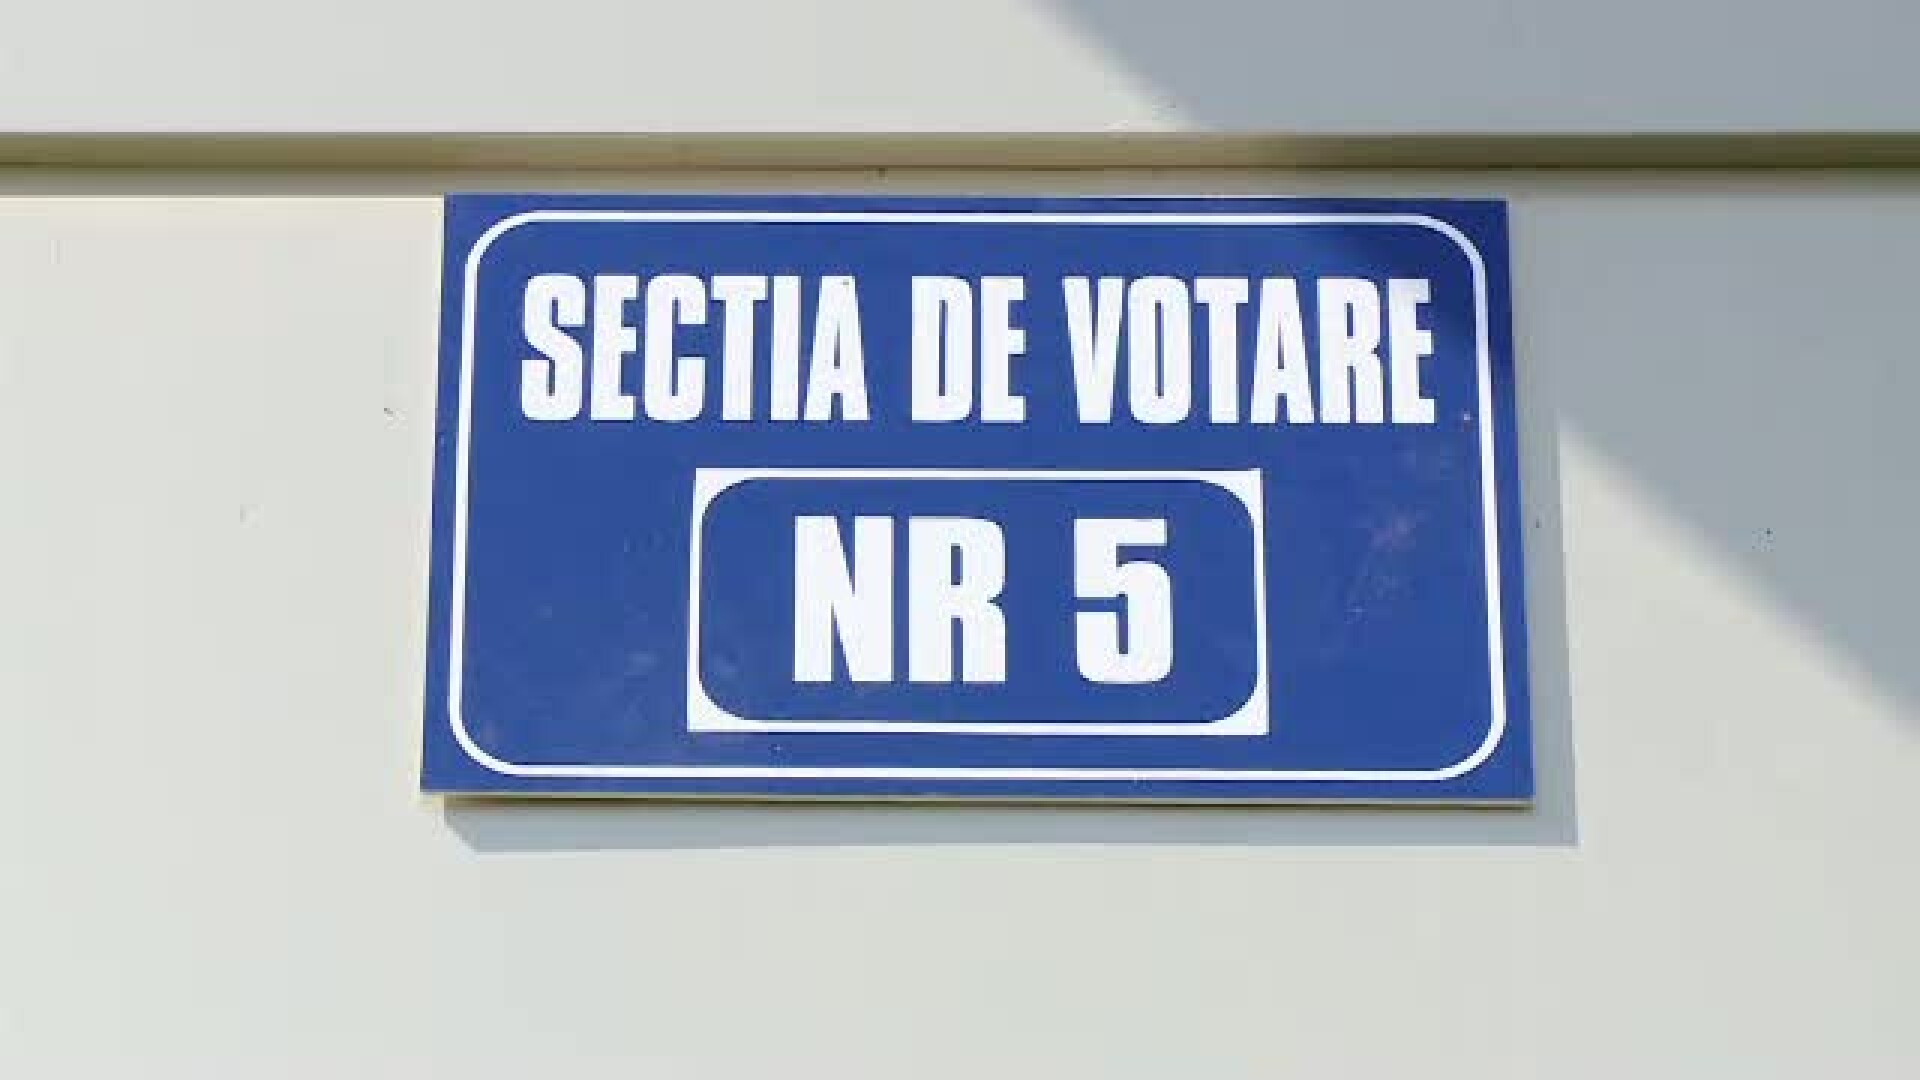 Sectii de votare